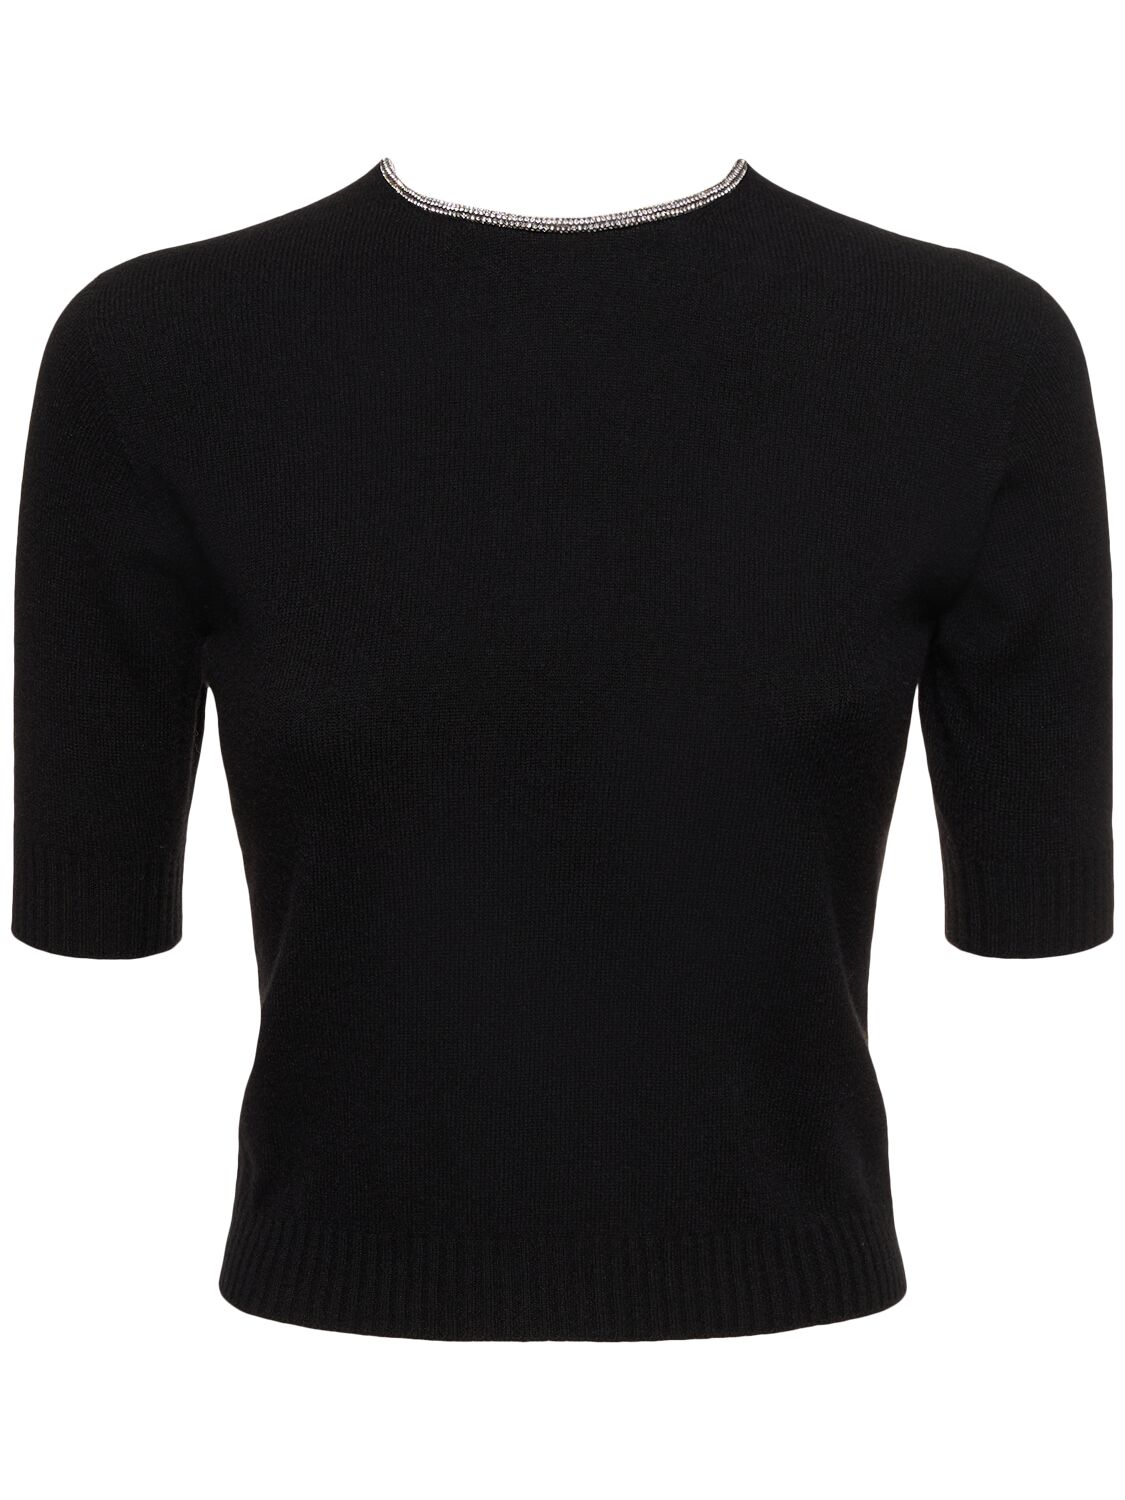 Giorgio Armani Single Jersey Embellished Top In Black